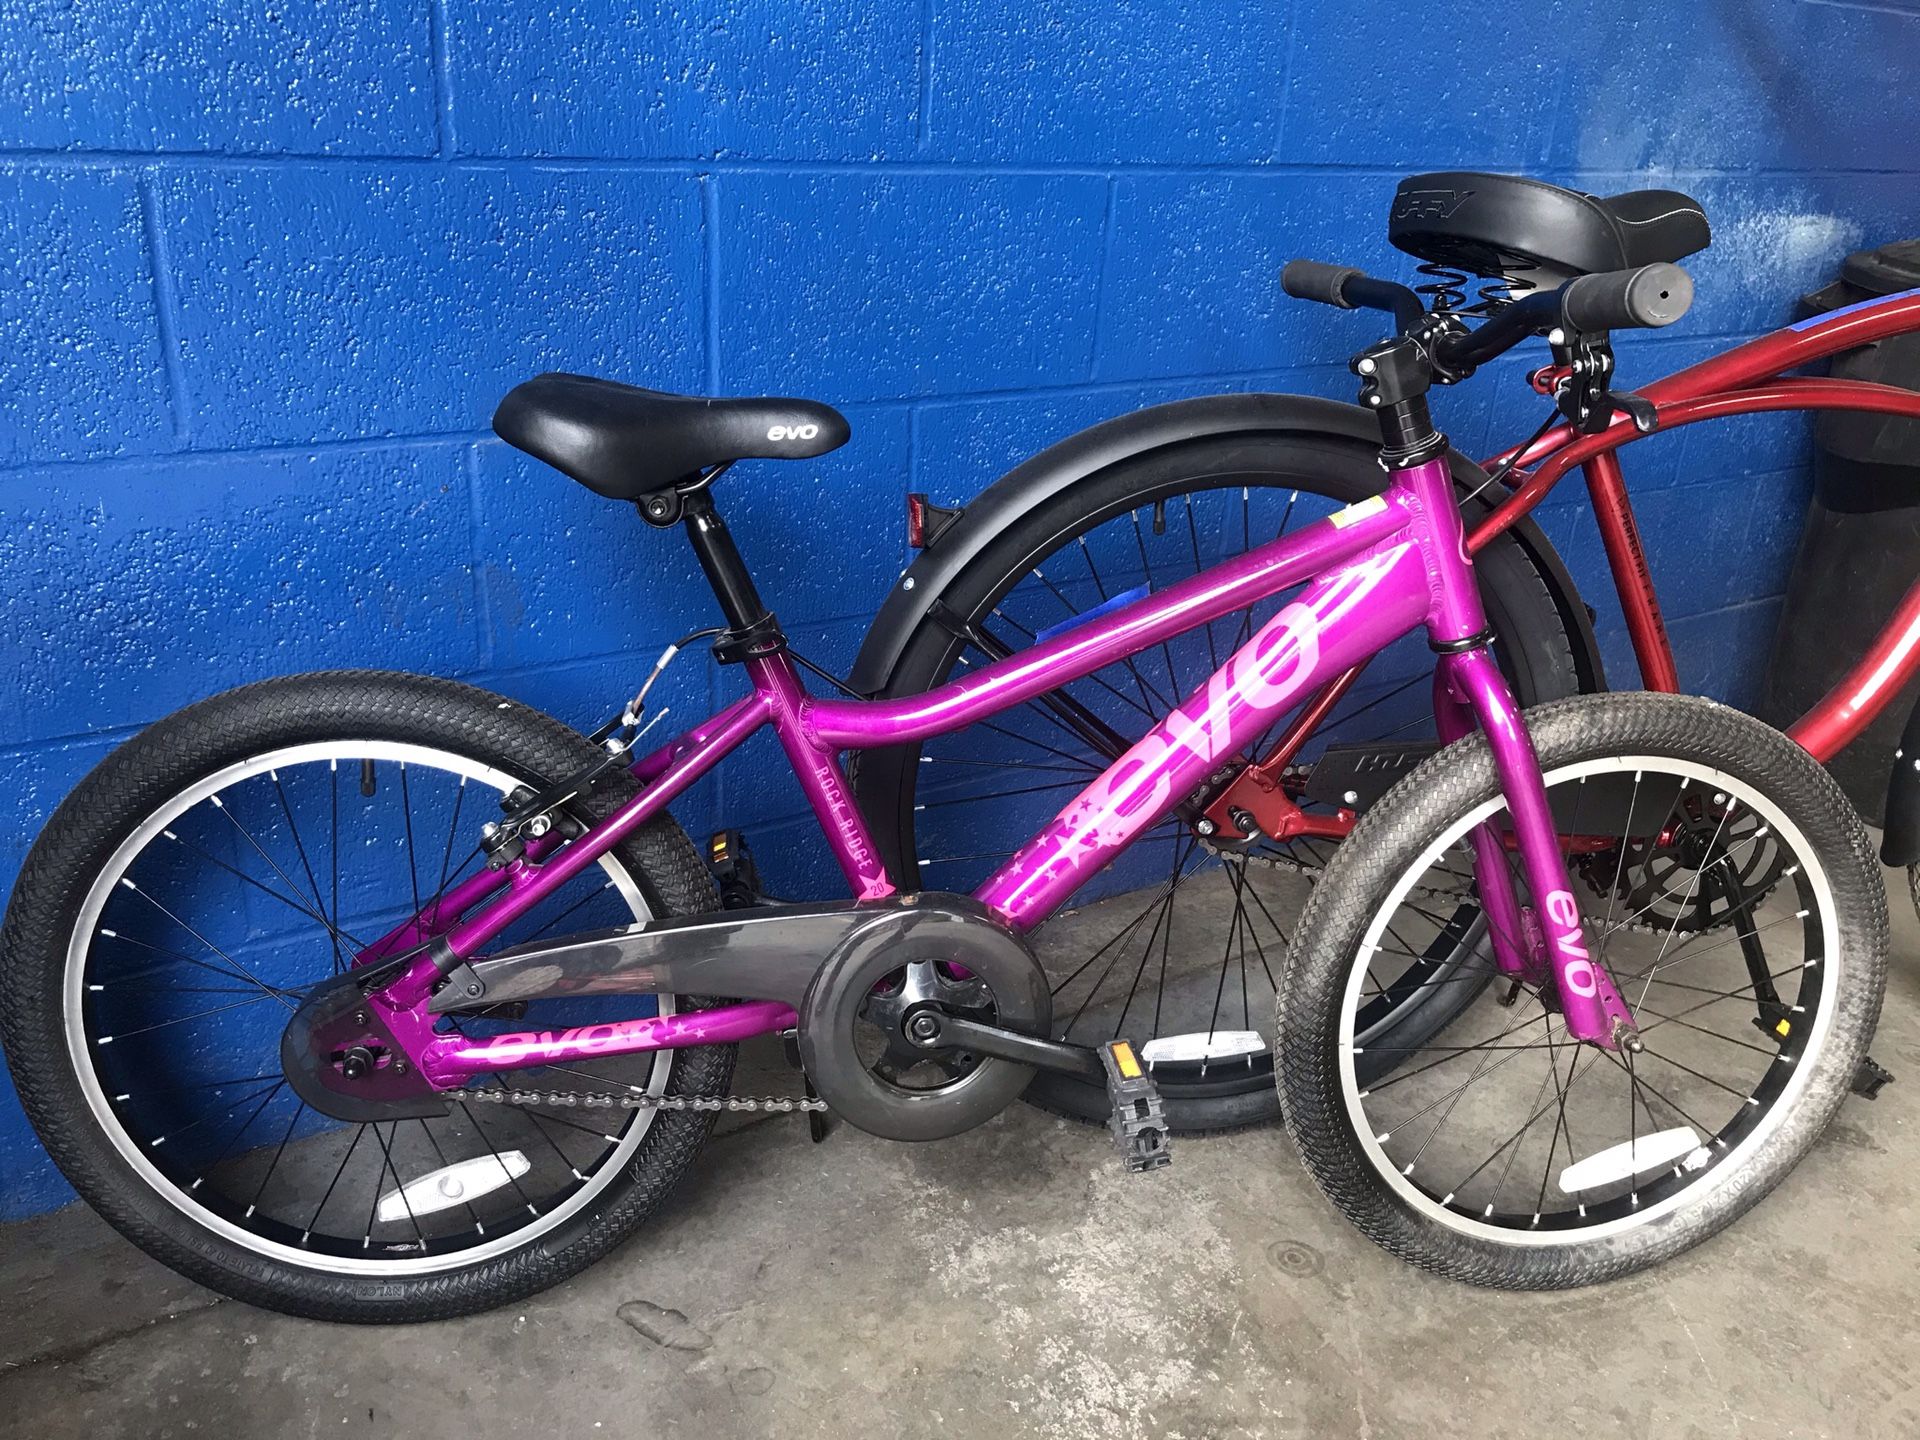 18 inch kids Evo bike (Fully tuned up)